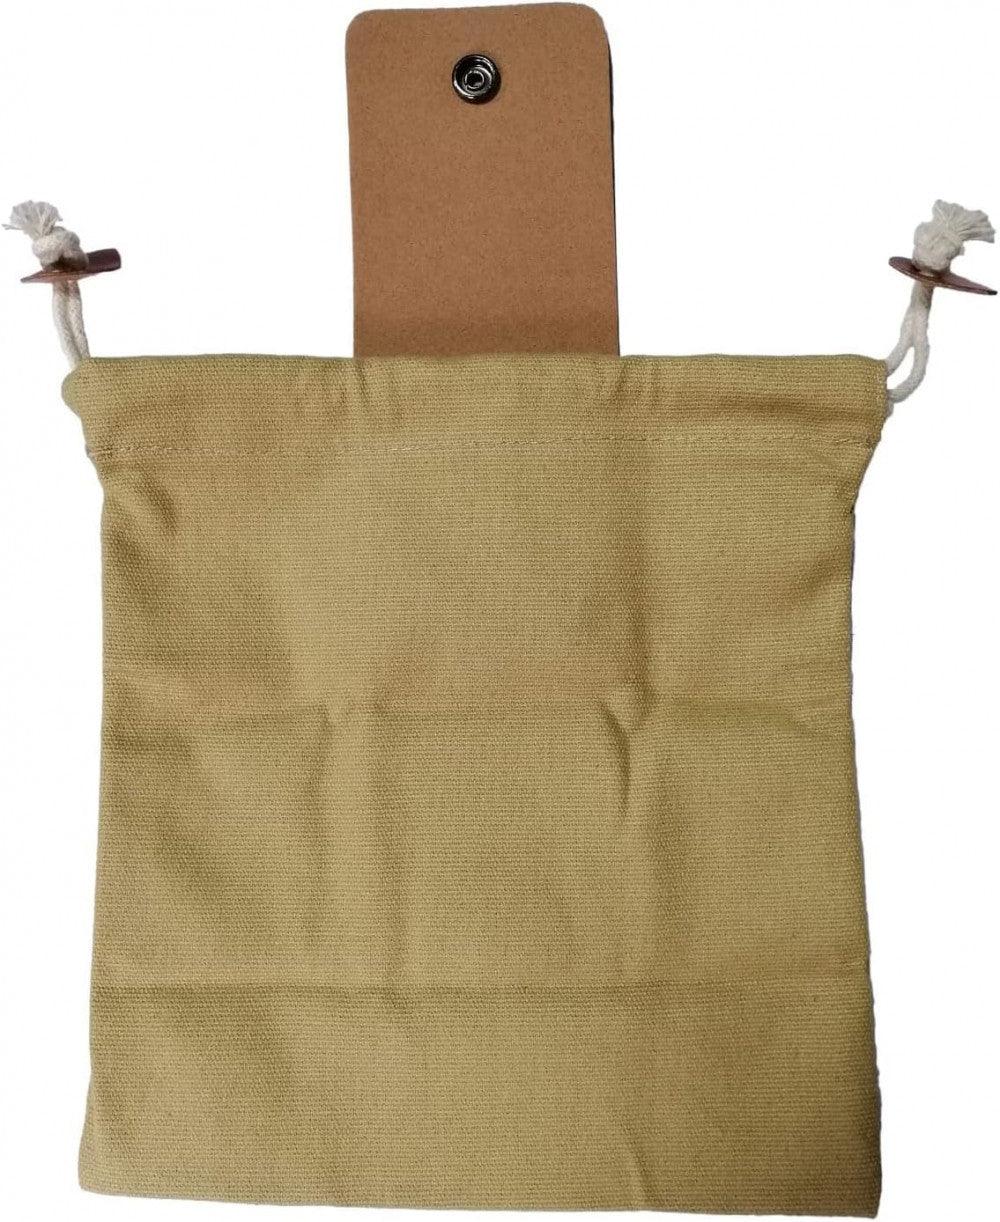 Viaszos vászon gyűjtőtáska, Gombagyűjtő táska, Összecsukható tároló 22 x 20cm nyitott állapotban - Outlet24